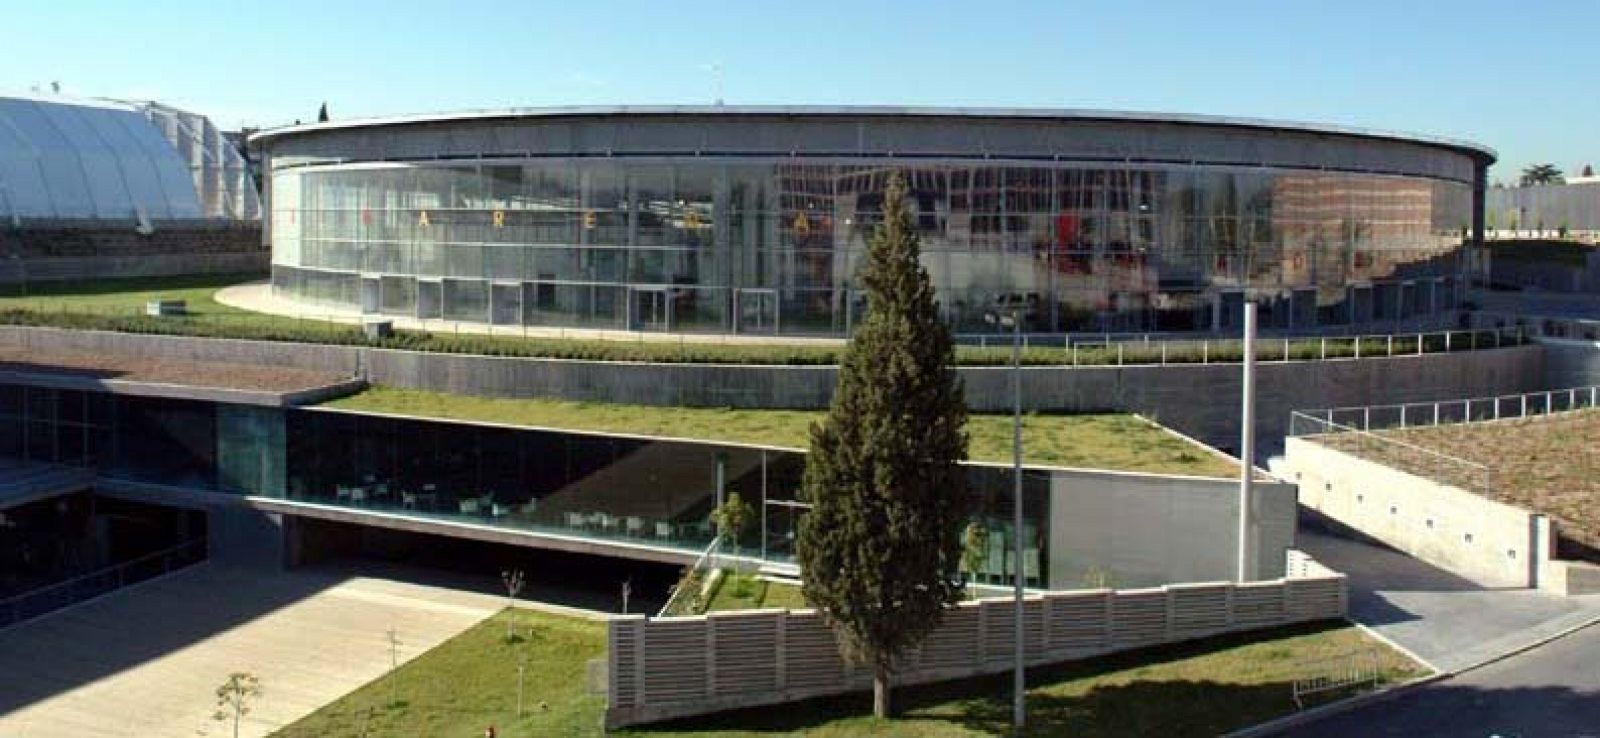 El Estudiantes y Madrid Espacios y Congresos Sociedad Anónima estaban en conflicto desde hace varios meses por el uso del recinto.